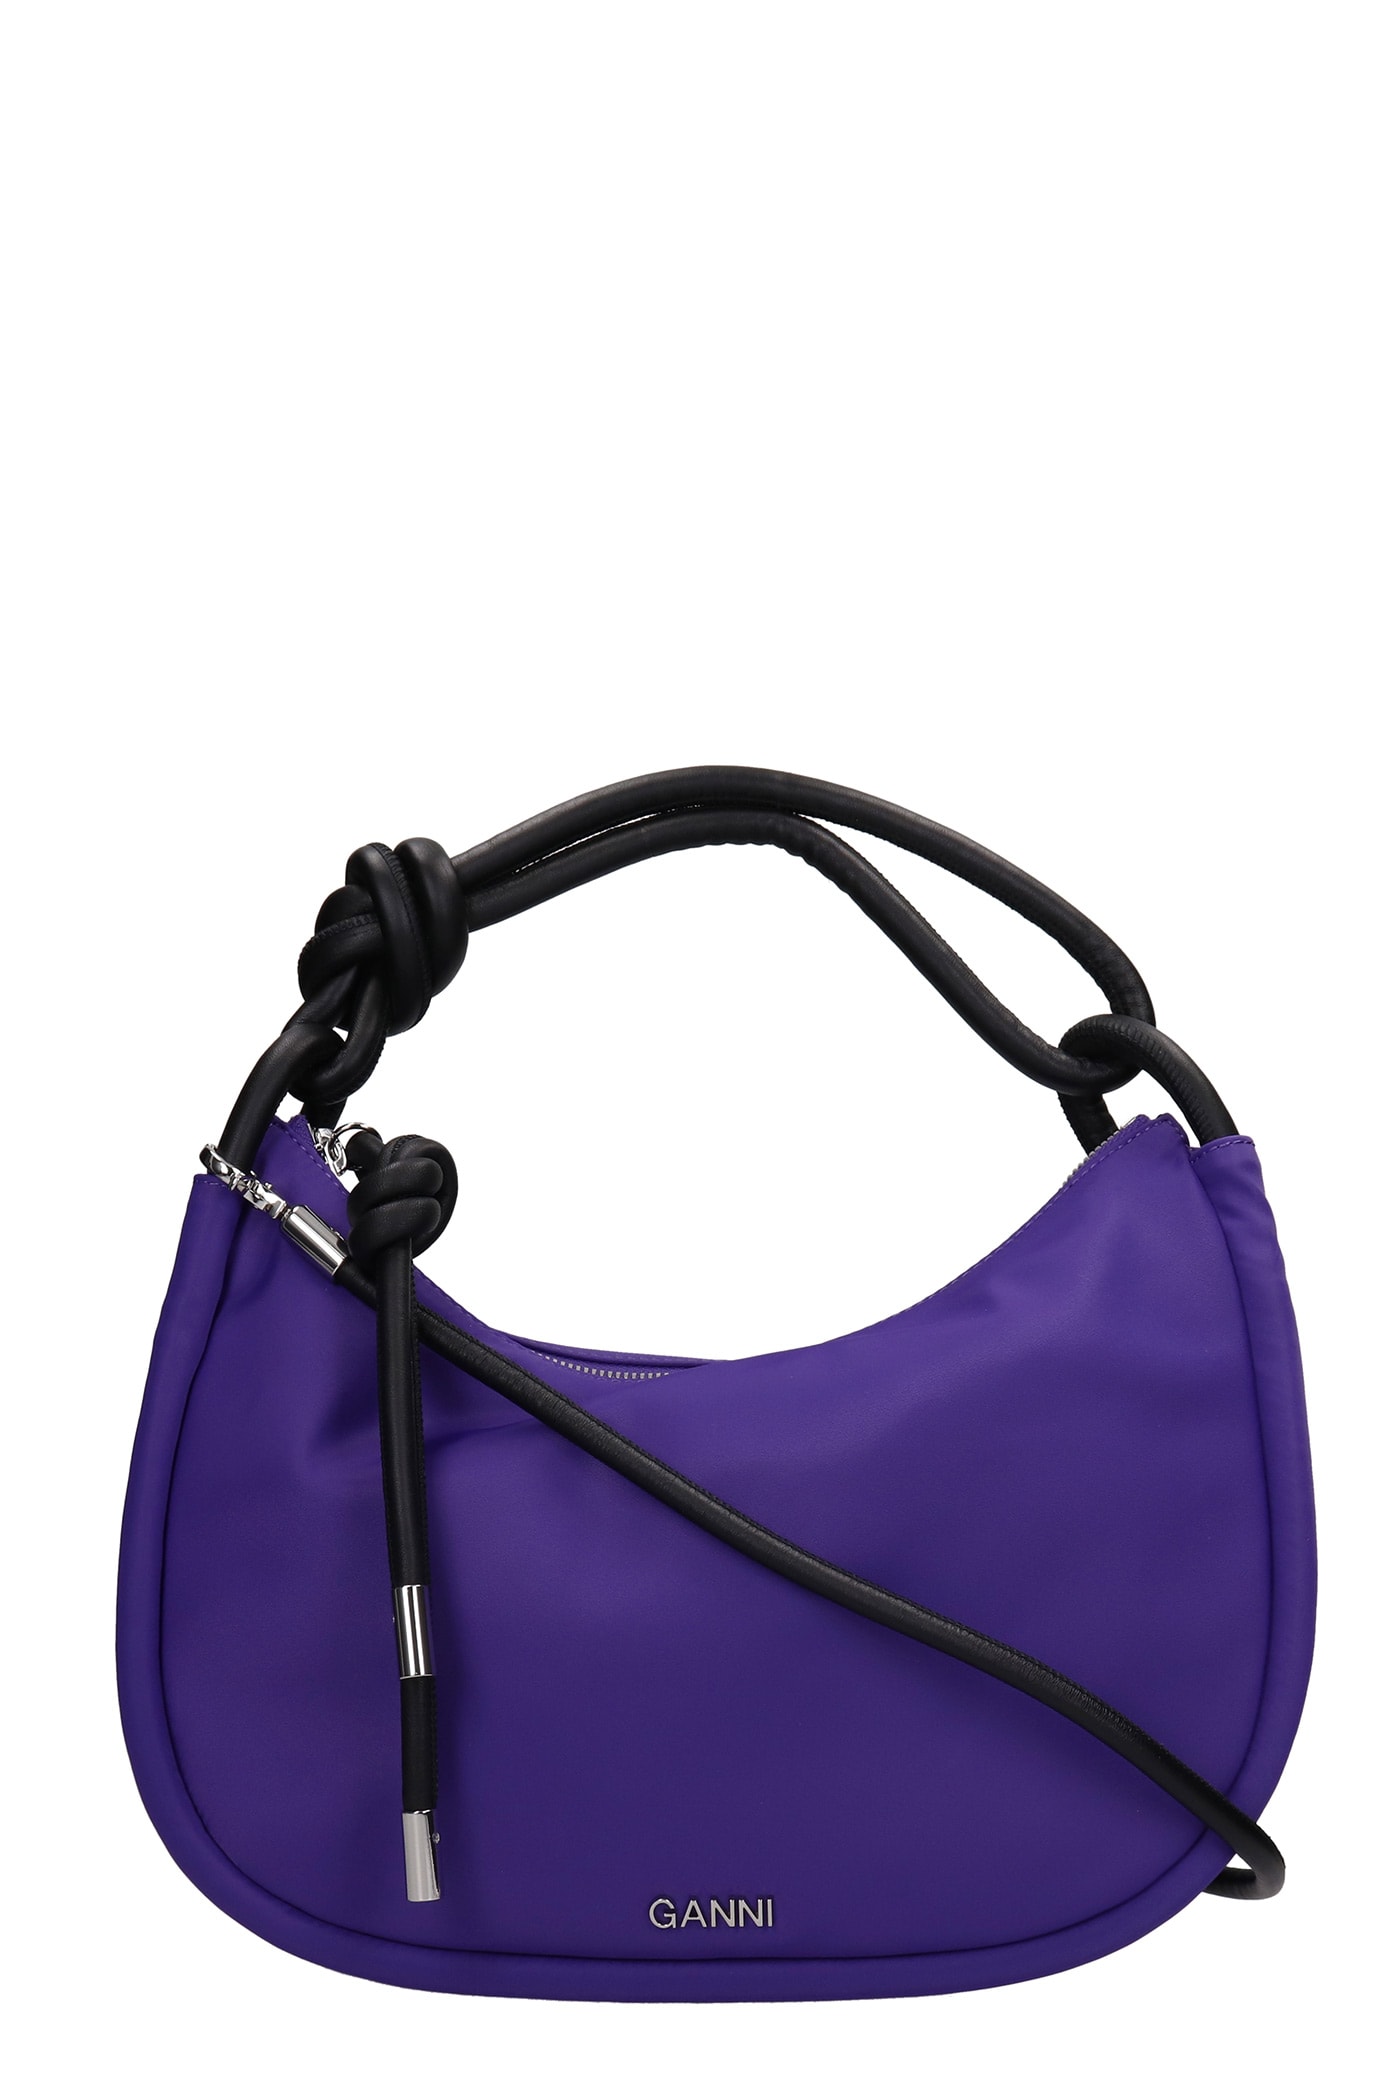 Ganni Knott Shoulder Bag In Viola Polyamide